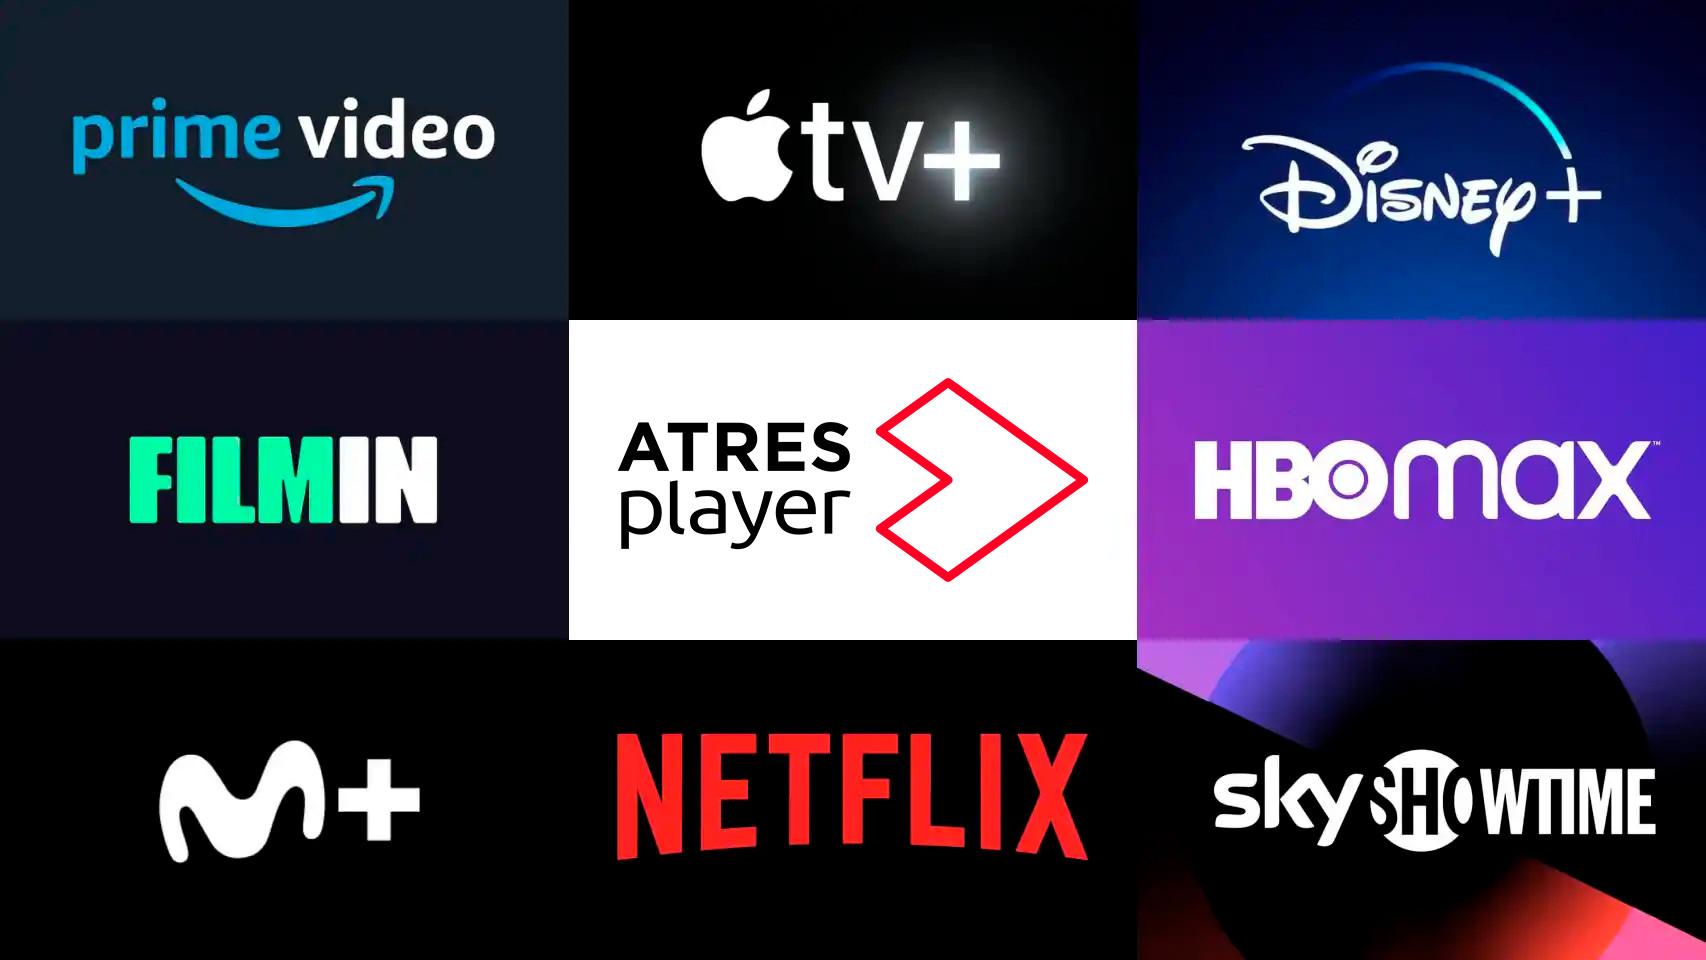 Comparación de precios de Netflix, HBO Max, Prime Video y otras plataformas  para ver series y